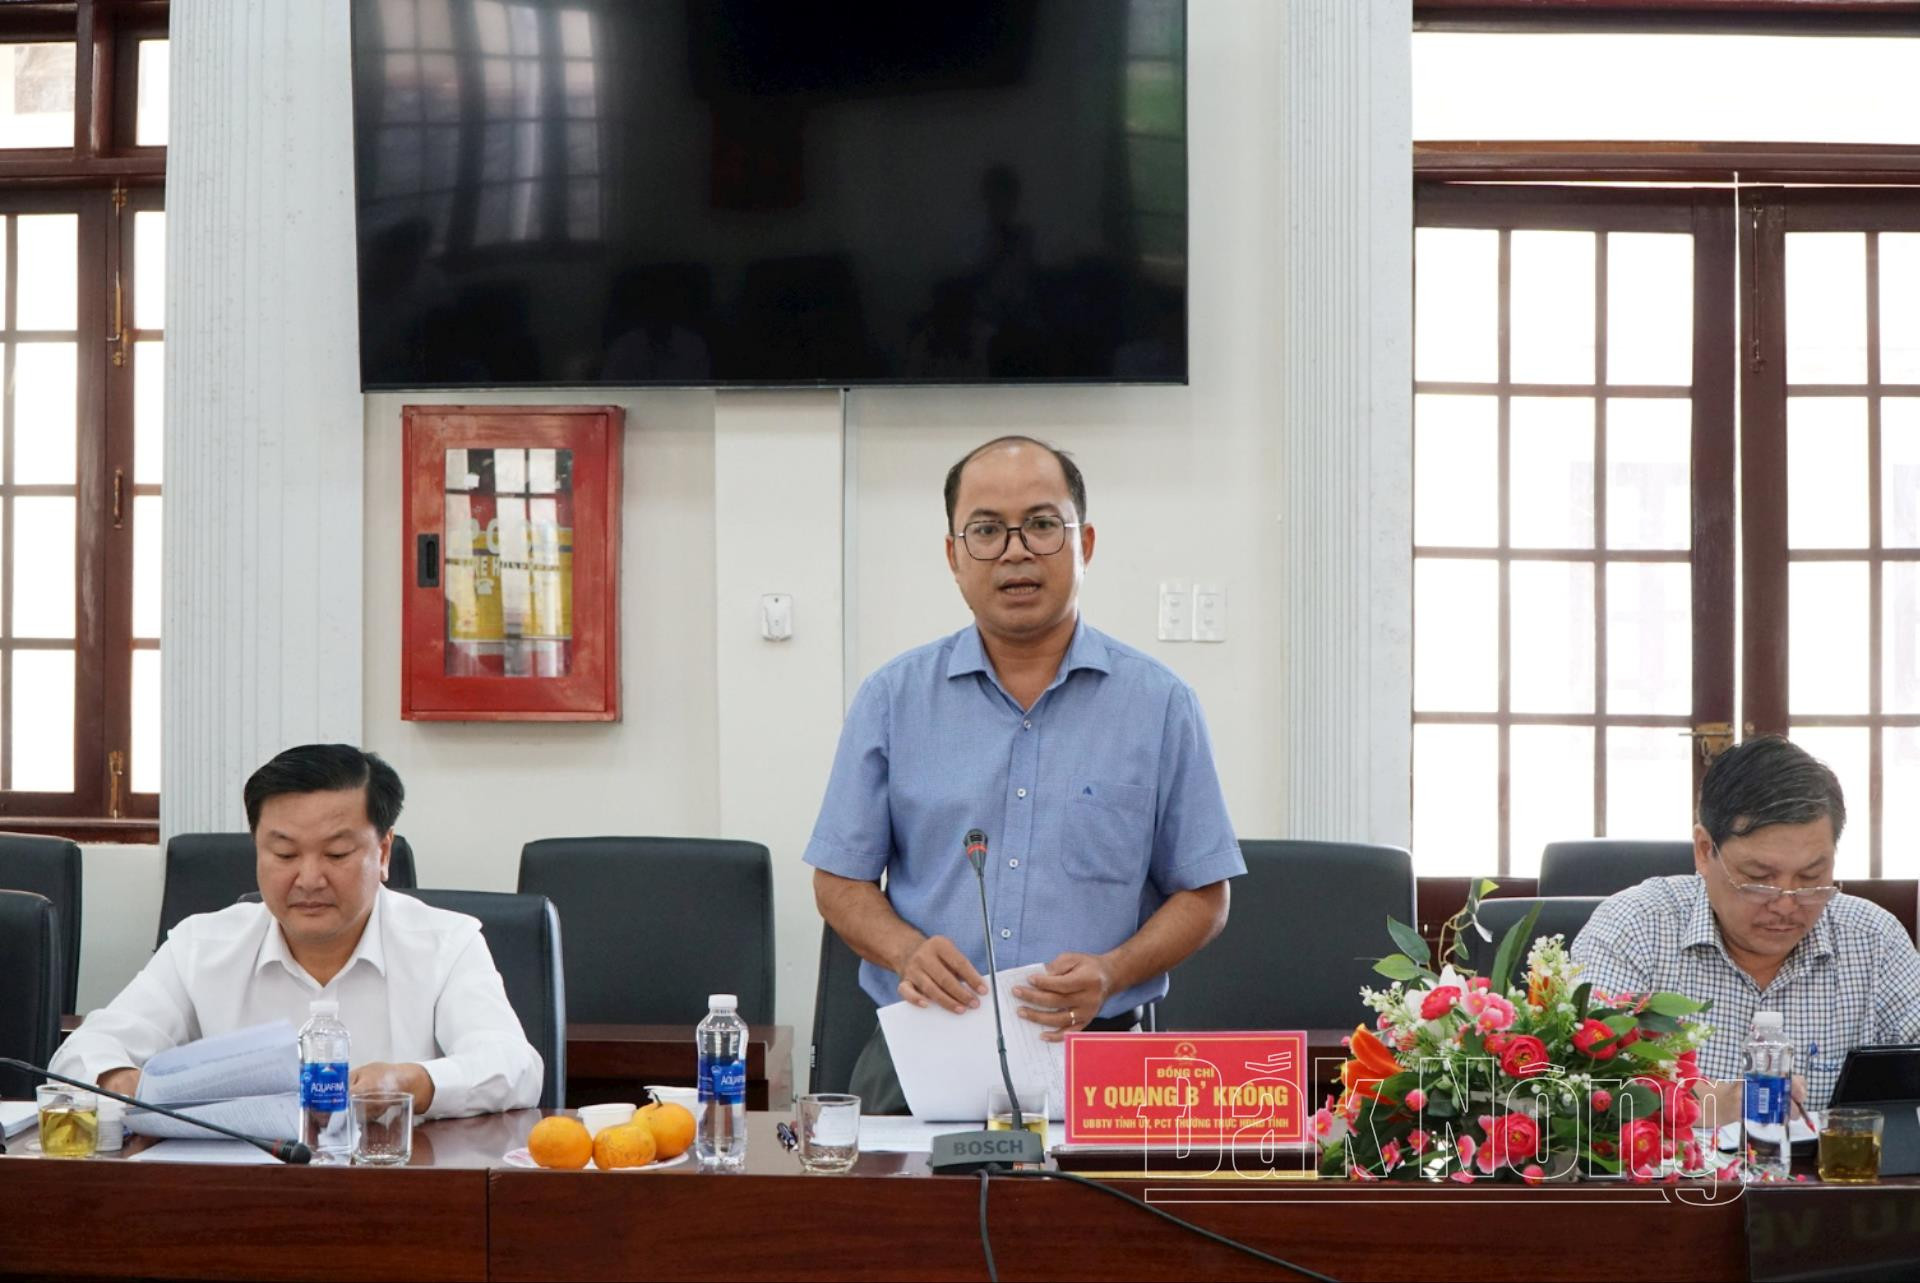 Đồng chí Y Quang B’Krông, UVTV, Phó Chủ tịch Thường trực HĐND tỉnh phát biểu kết luận buổi làm việc